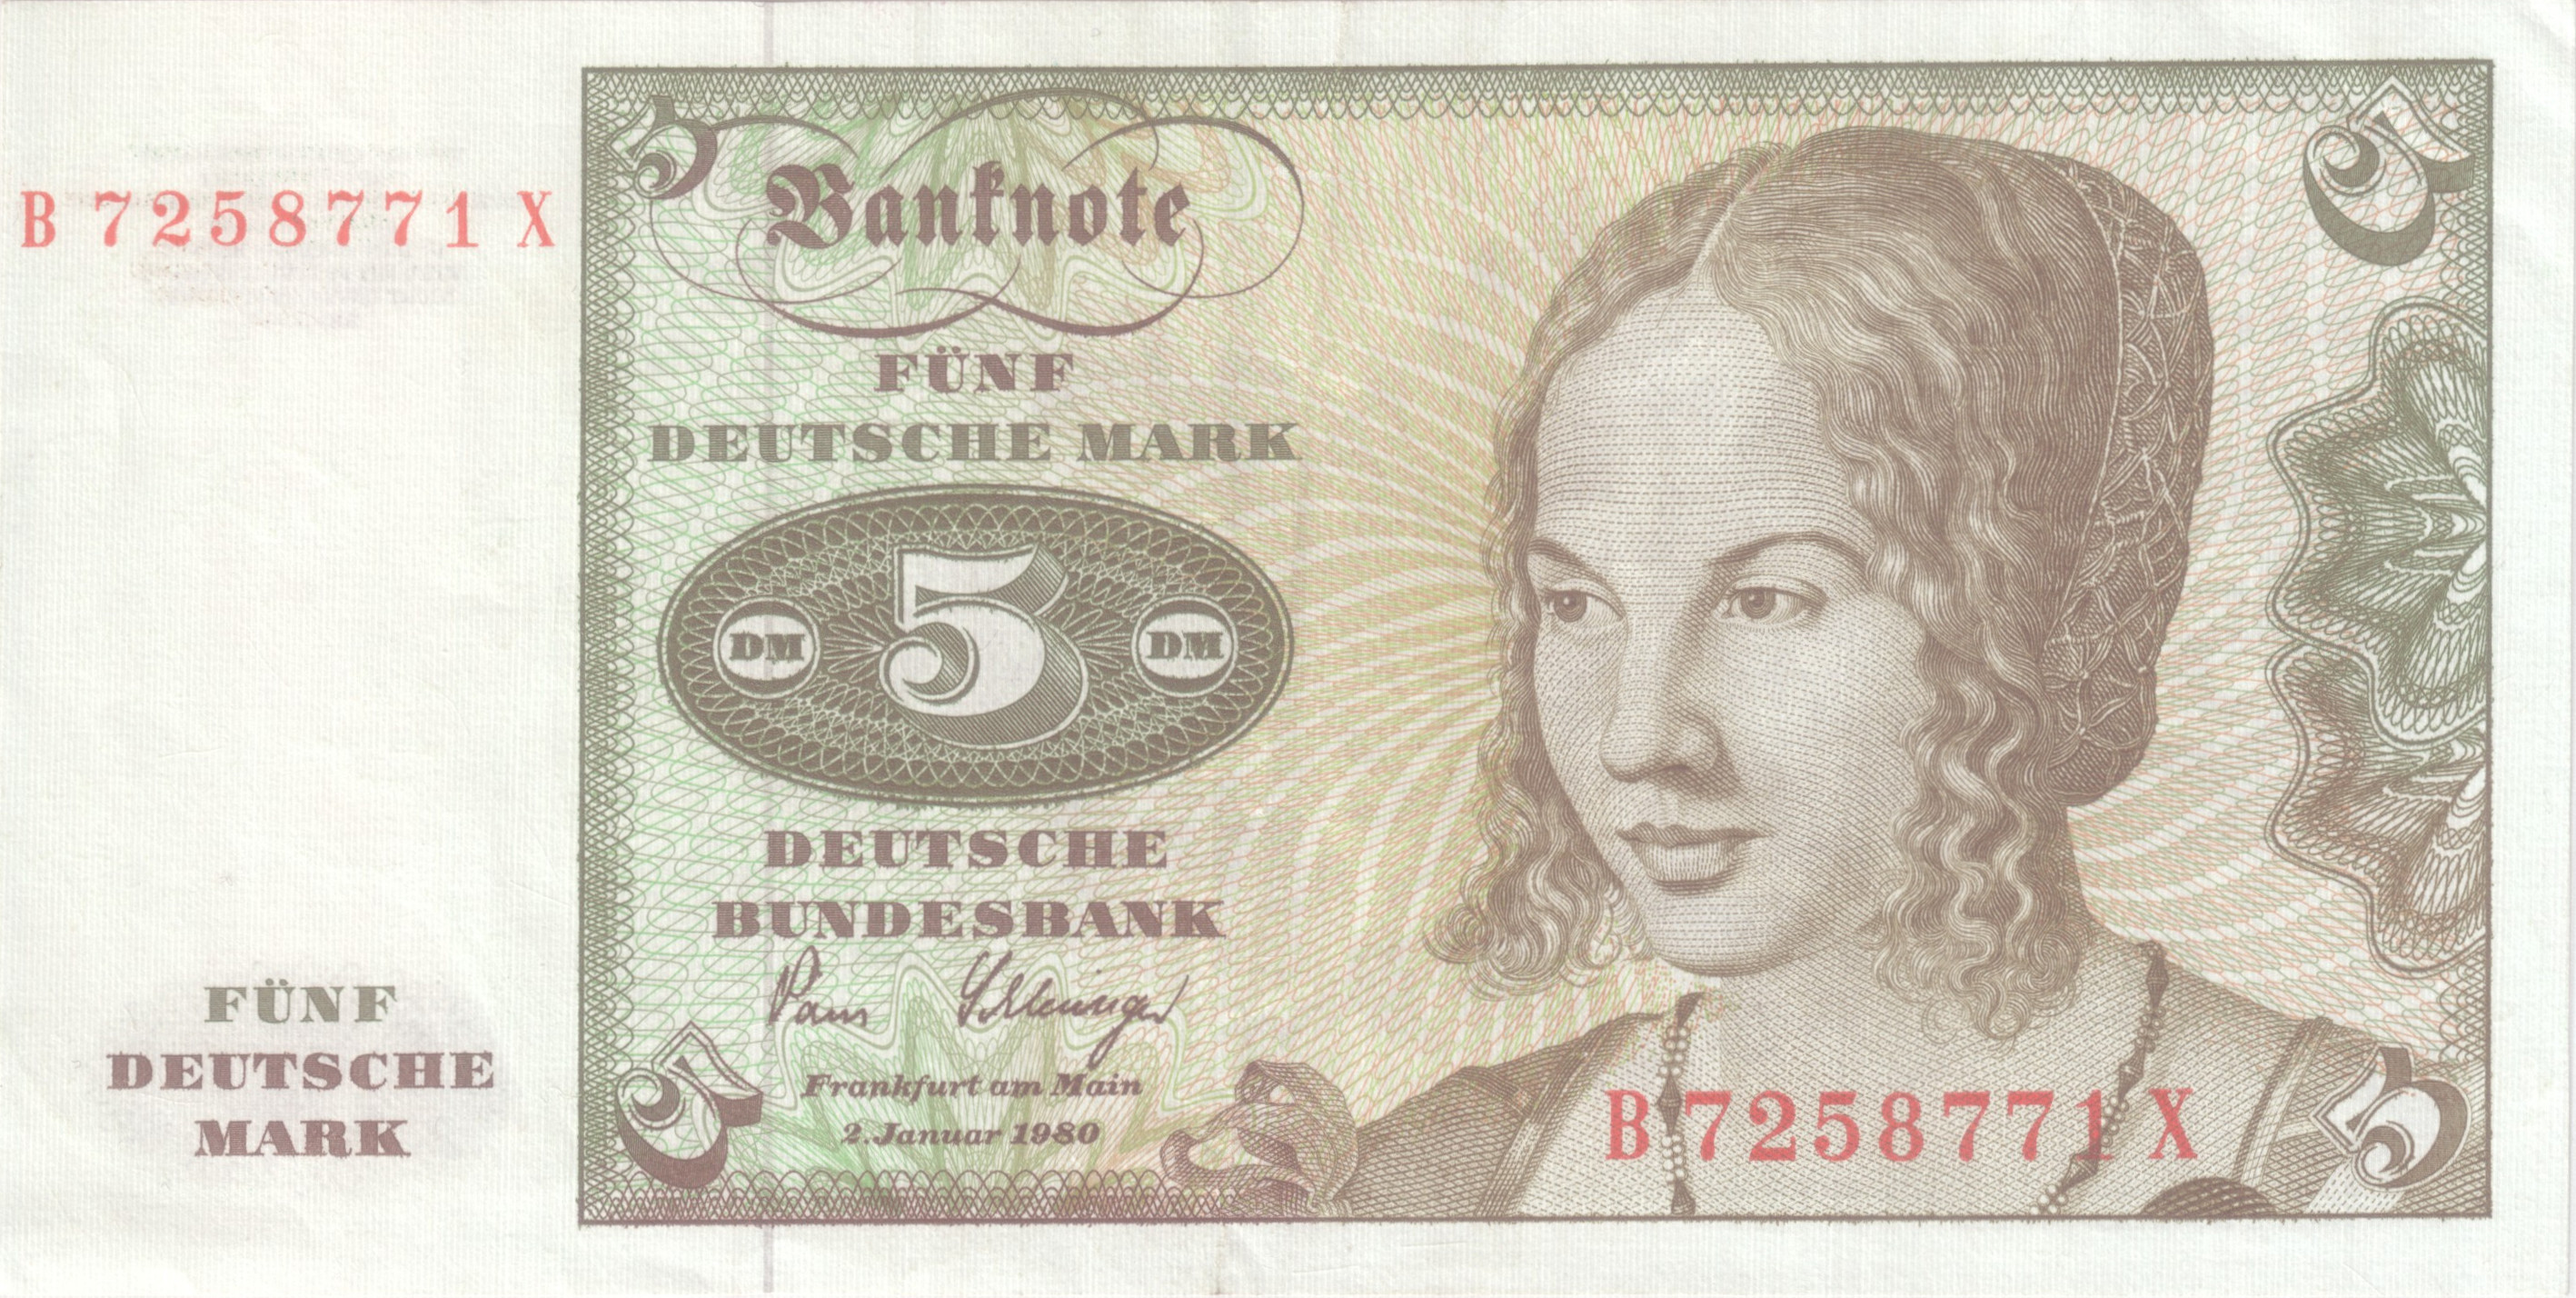 Dürers - Die Venezianerin auf Banknote